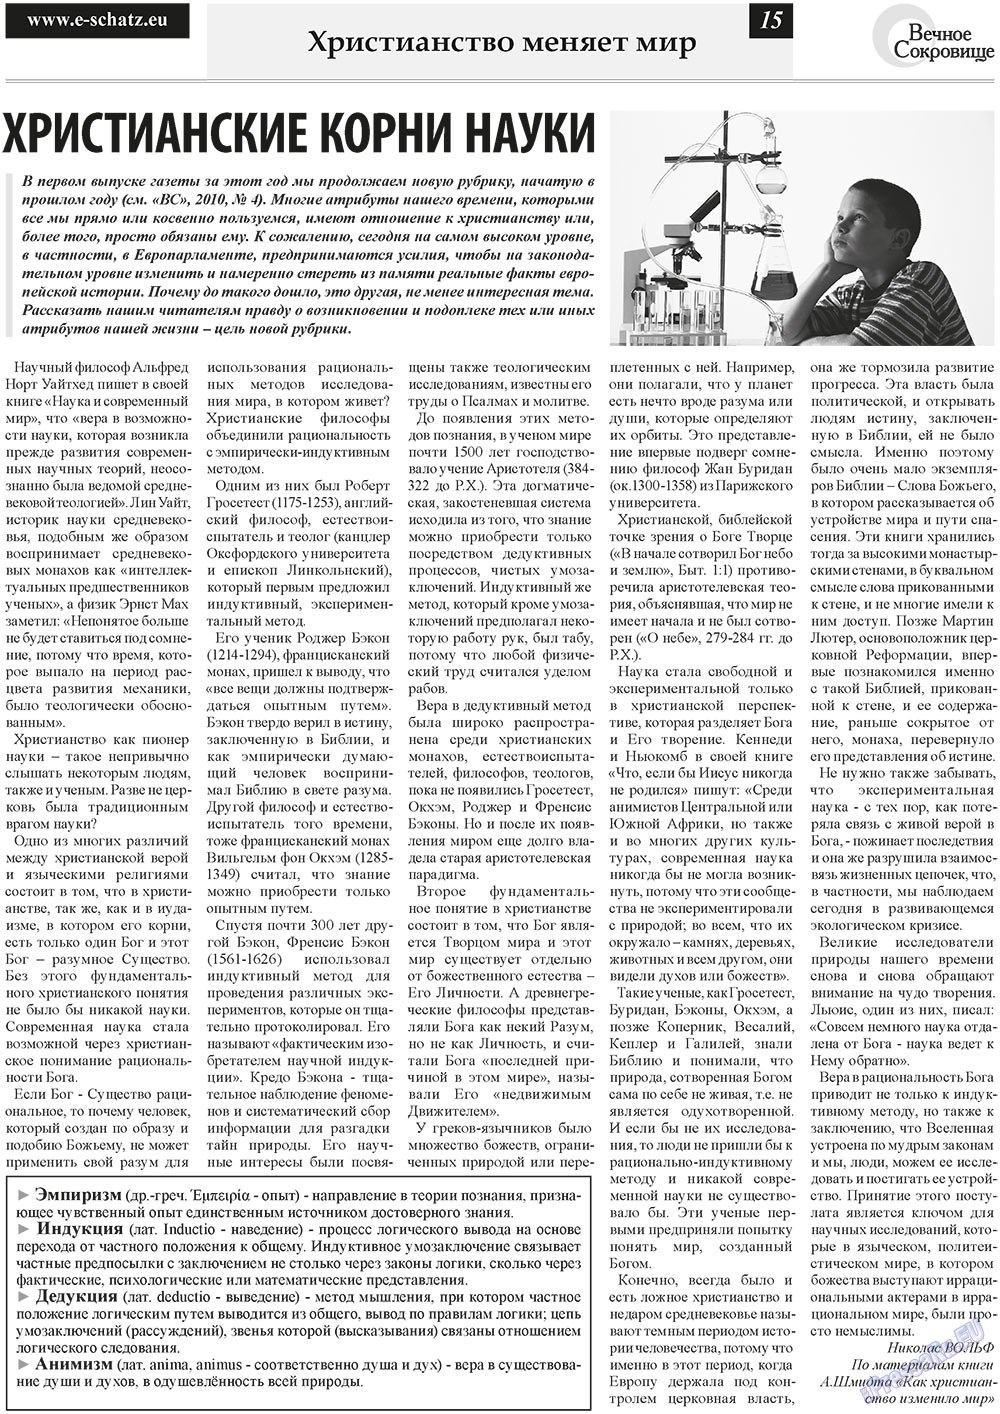 Вечное сокровище (газета). 2011 год, номер 1, стр. 15